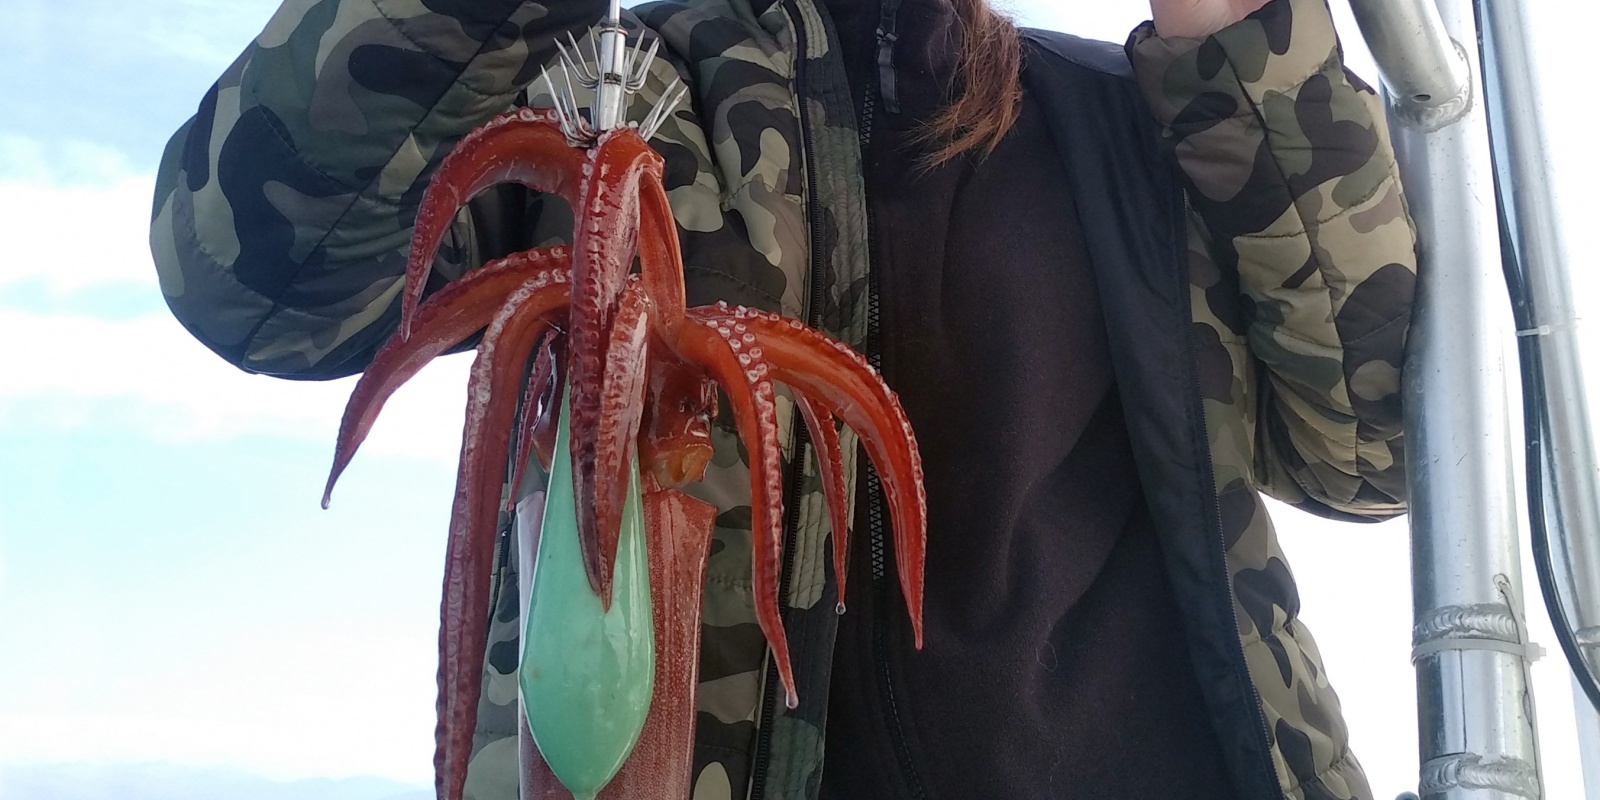 Ce gros calamar rouge pris à la turlutte aiguille par cette jeune fille montre bien que cette technique peut se pratiquer à tous âges !